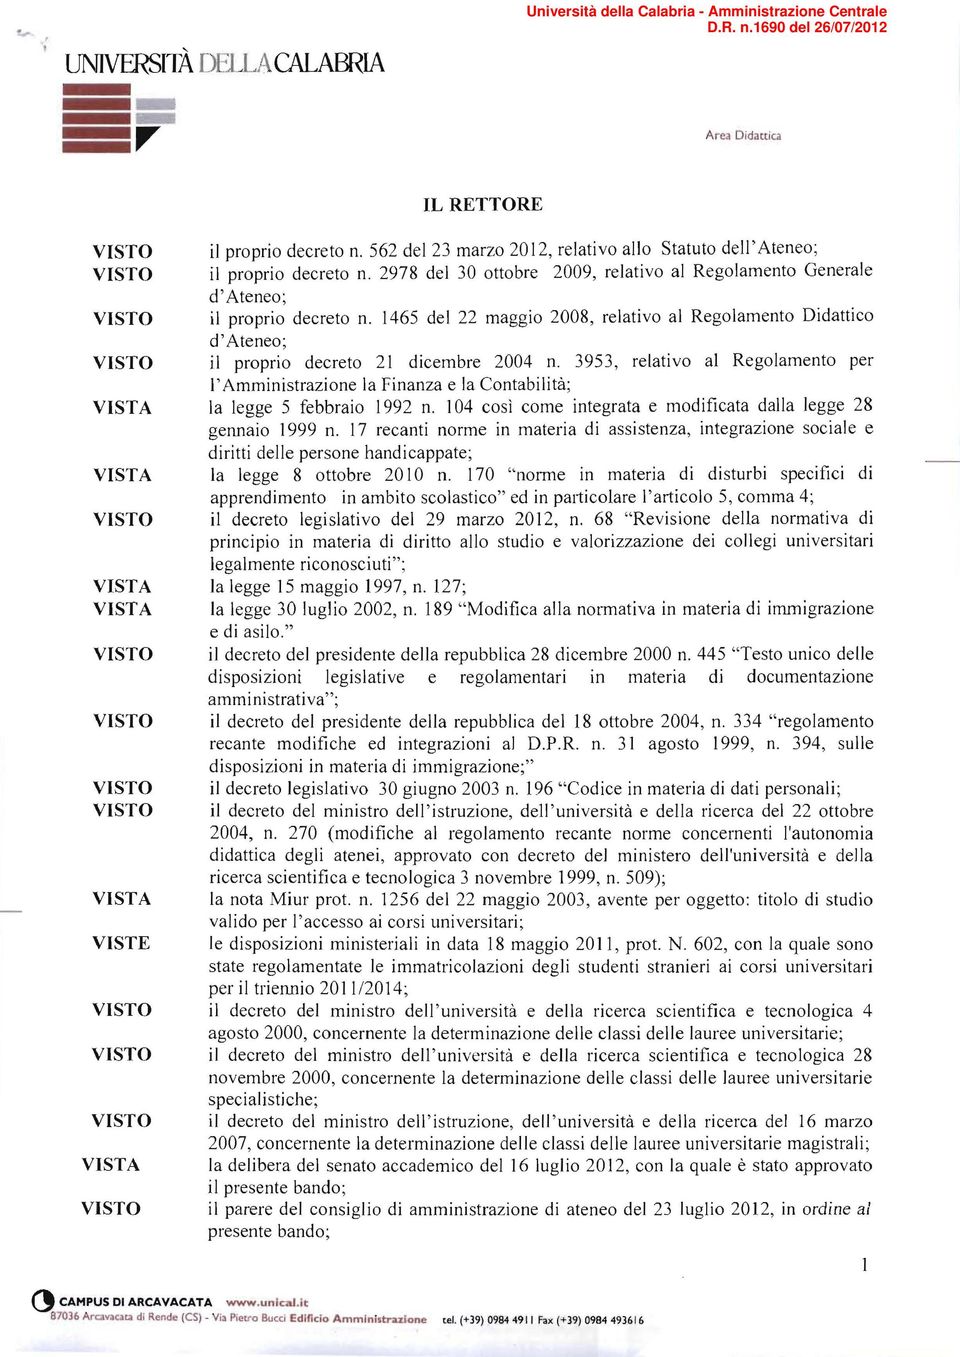 1465 del 22 maggio 2008, relativo al Regolamento Didattico d'ateneo; VISTO il proprio decreto 21 dicembre 2004 n.